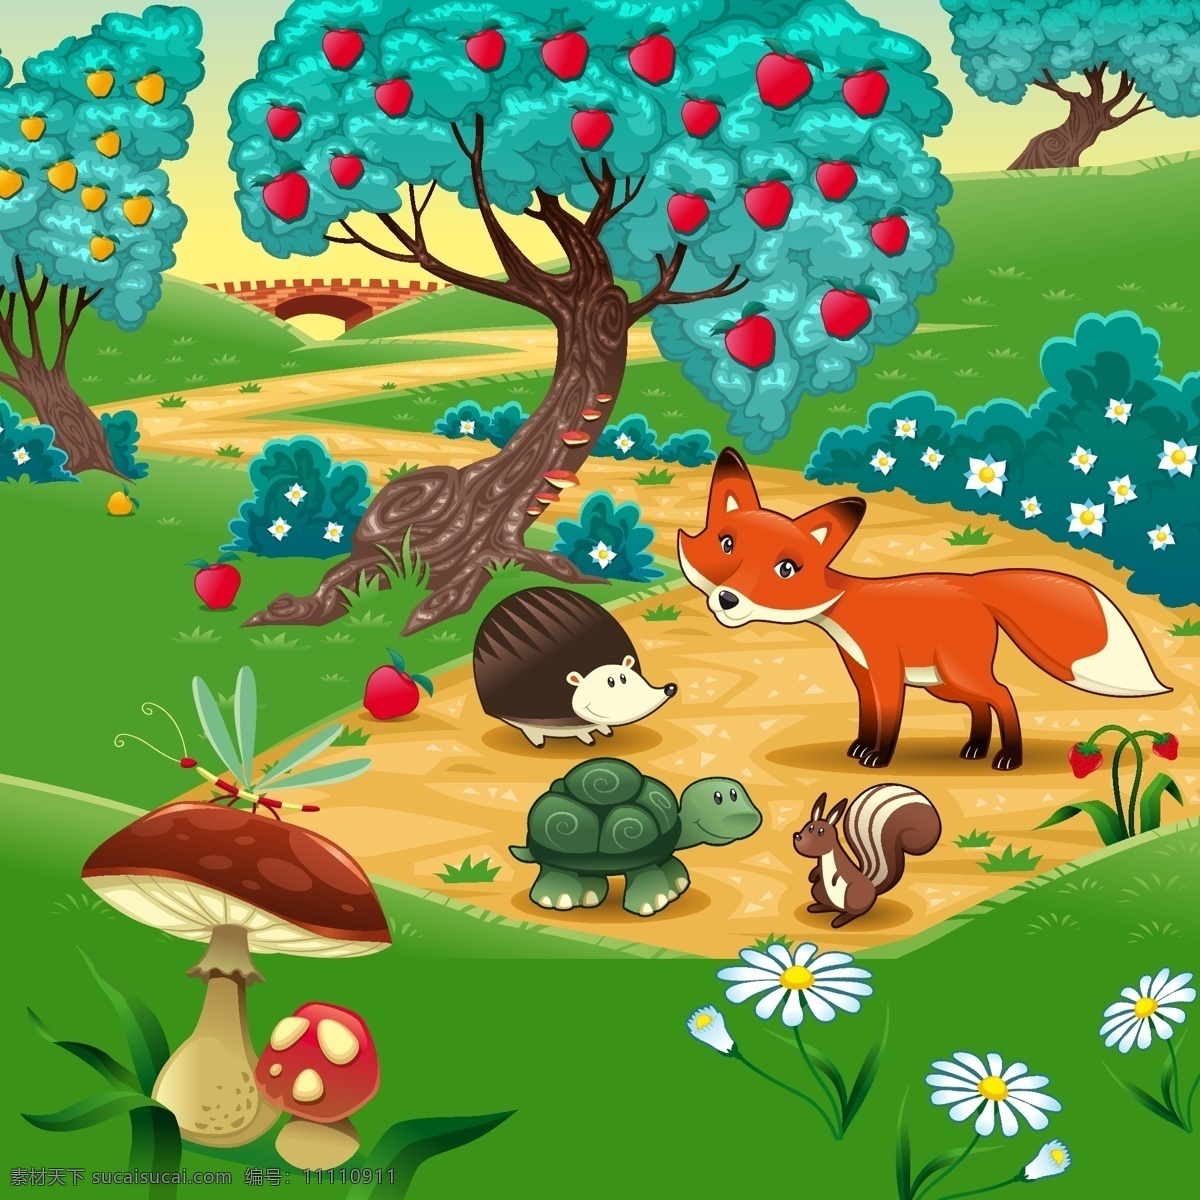 丰收图片 卡通场景 刺猬 乌龟 松鼠 蘑菇 苹果树 狐狸 卡通动物 小白花 草莓 卡通设计